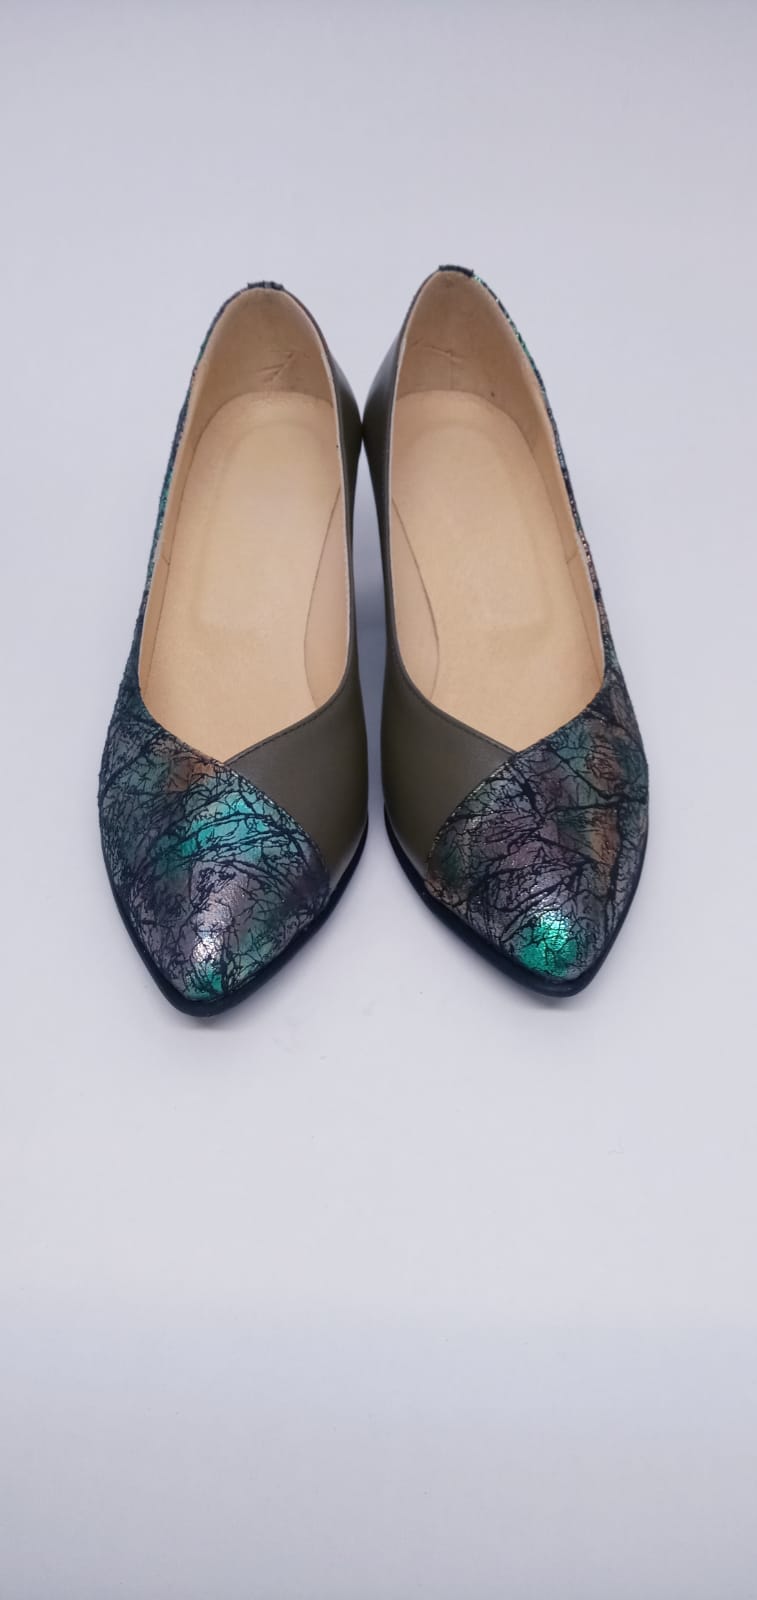 Pantofi din piele naturala cu print abstract